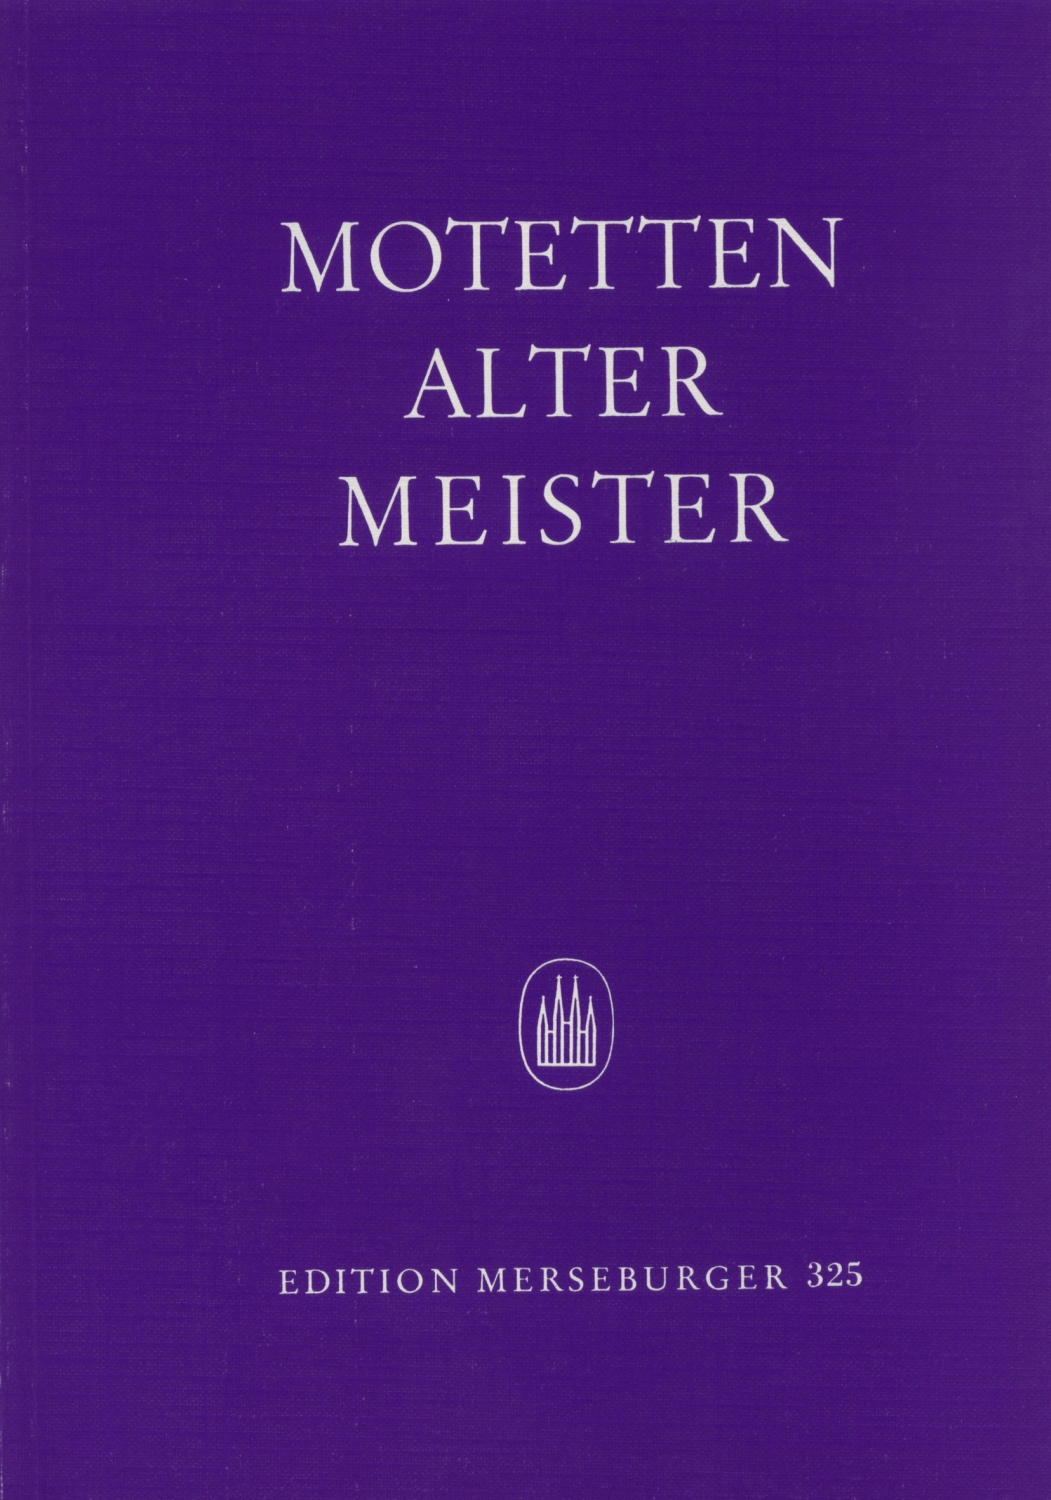 motetten-alter-meister-gch-_chp_-_0001.JPG